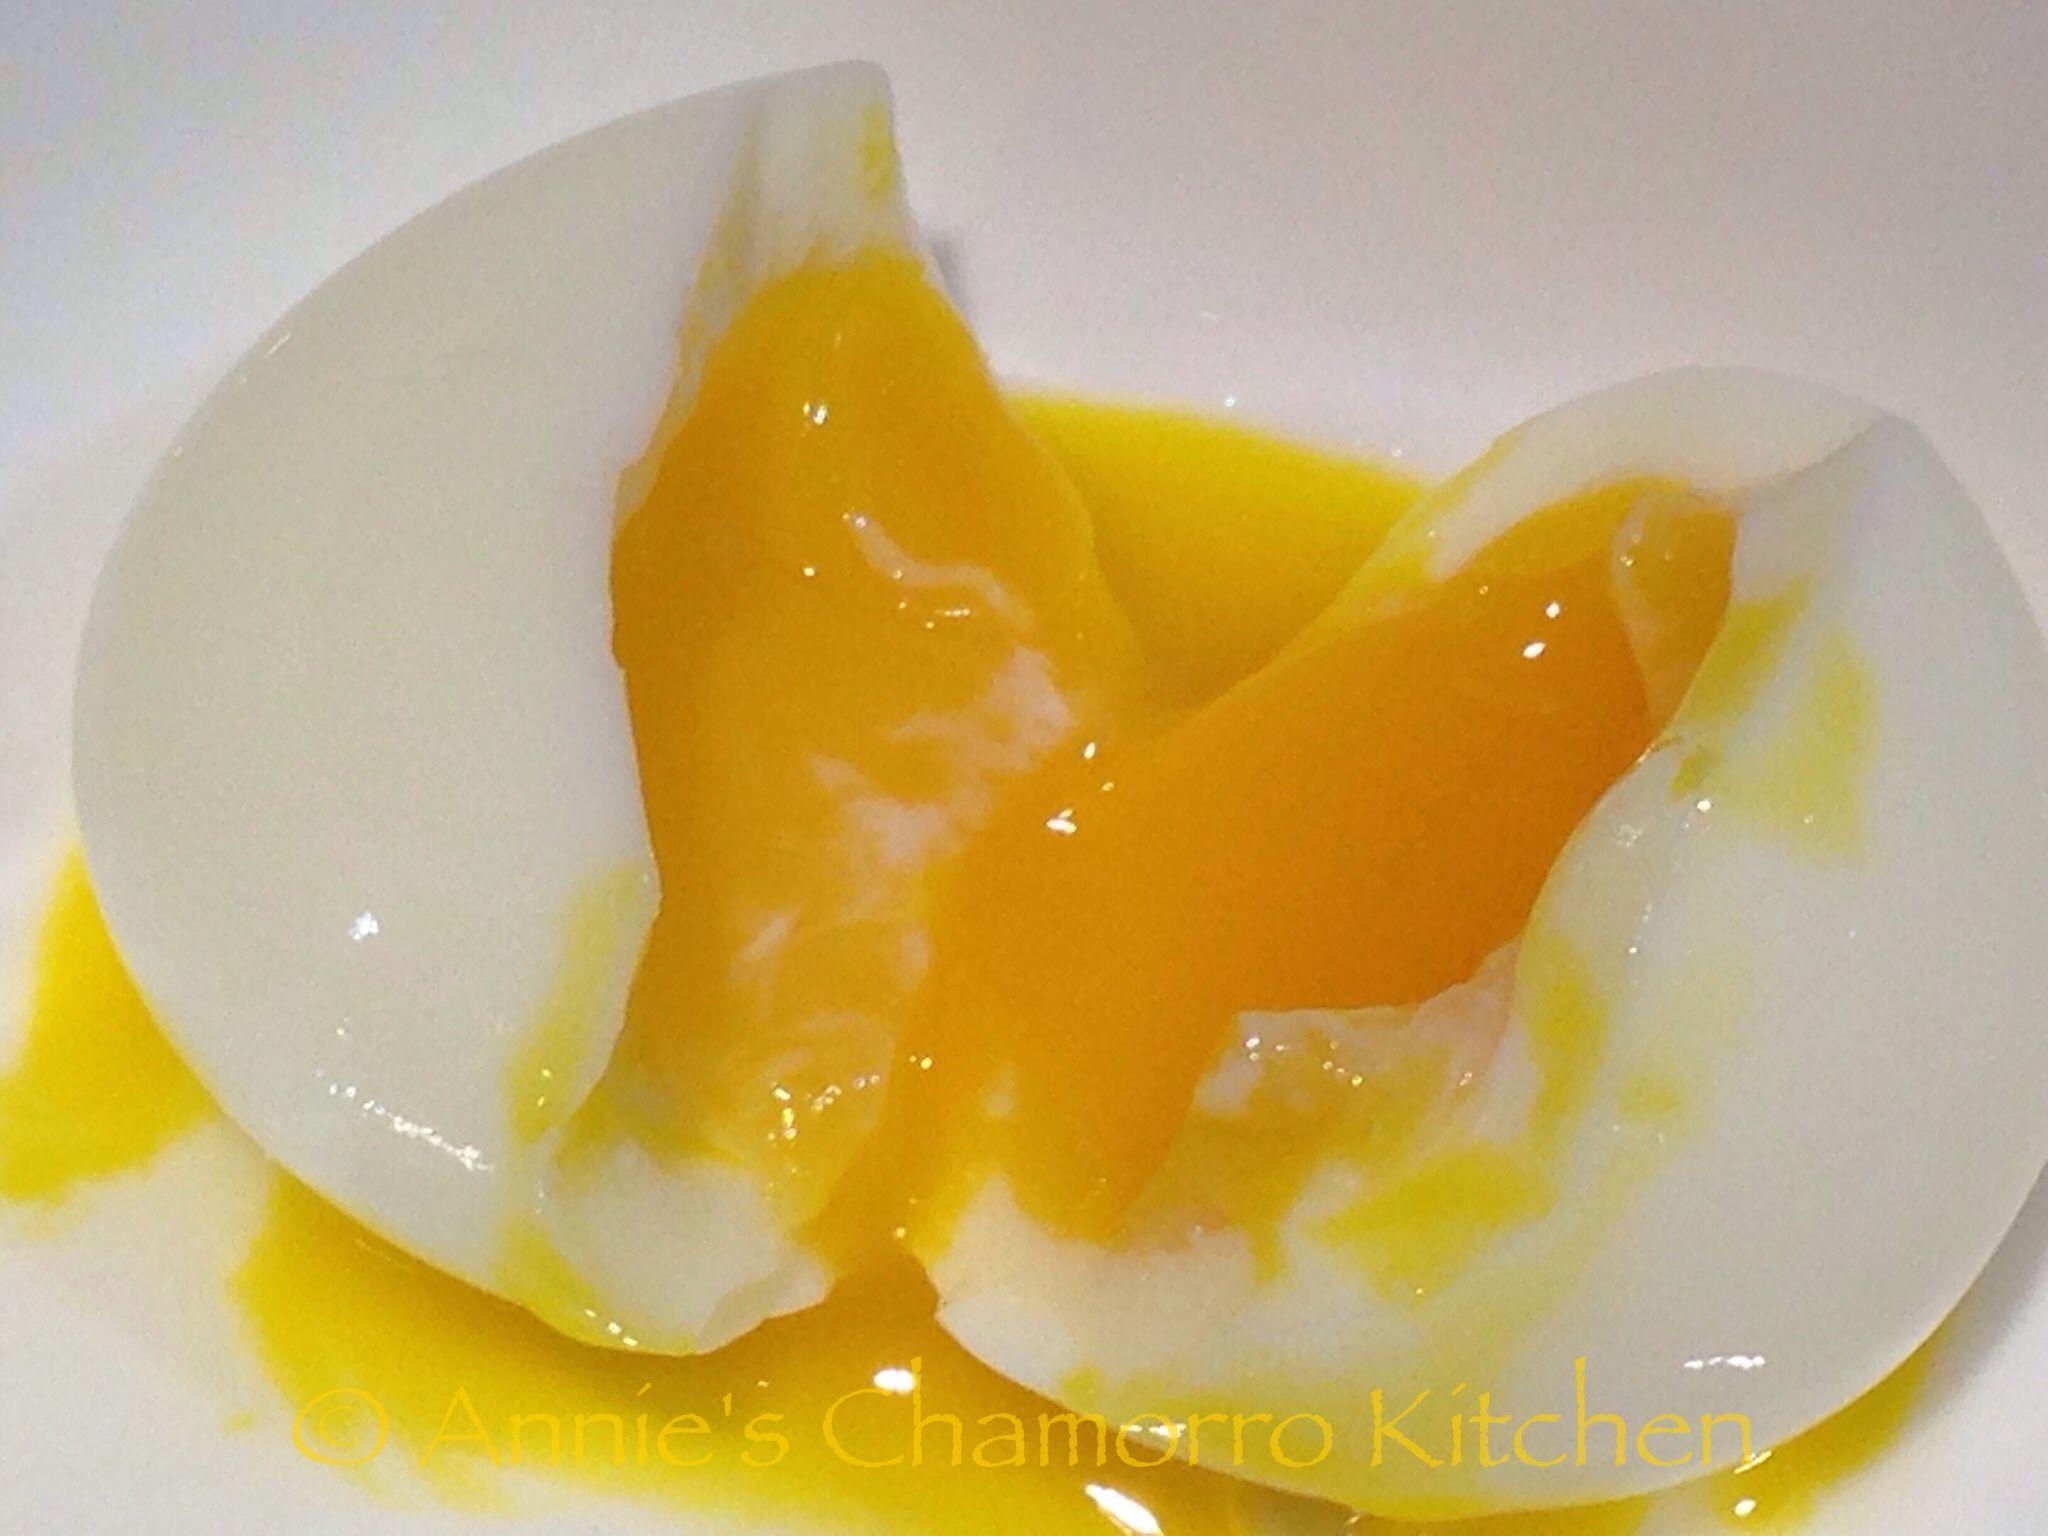 Perfect Soft Boiled Eggs. Annie's Chamorro Kitchen